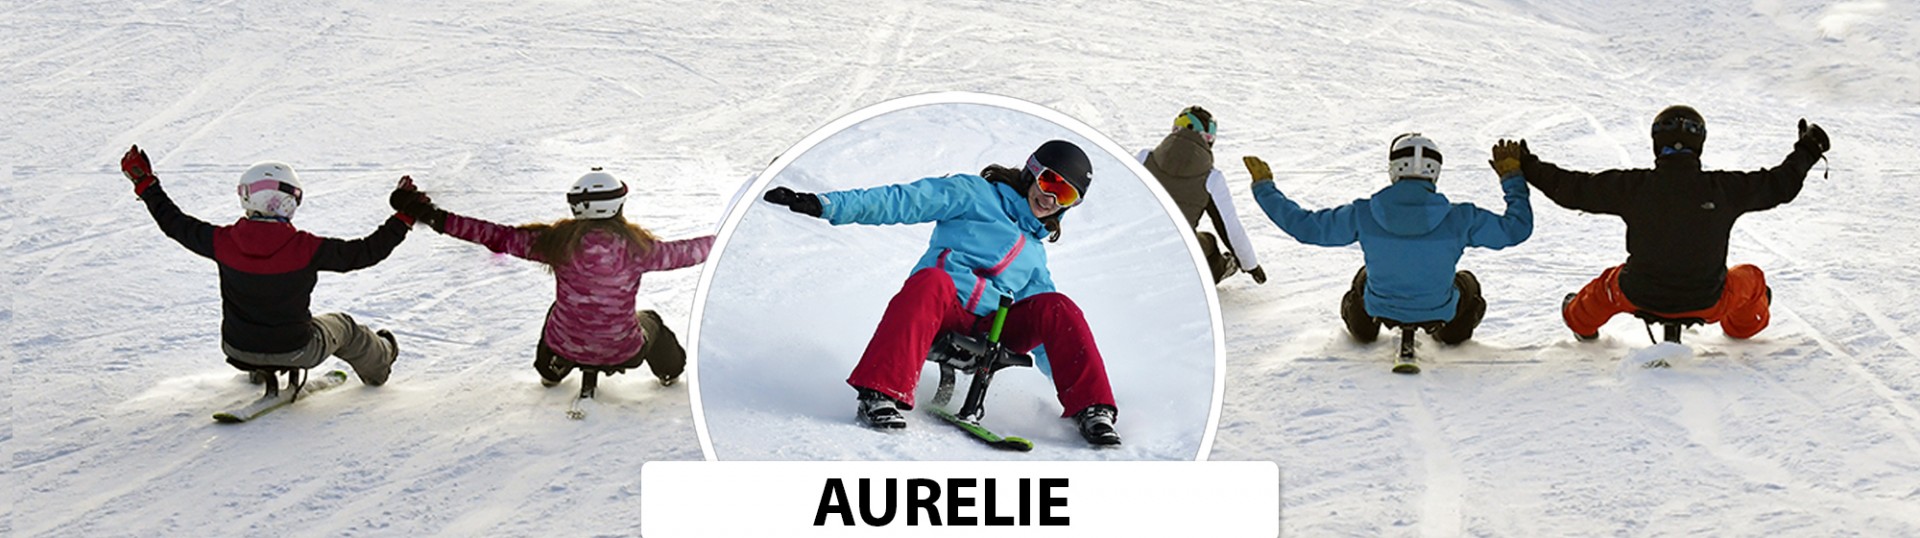 Chamrousse blog expérience test snooc Aurélie station ski montagne isère alpes france